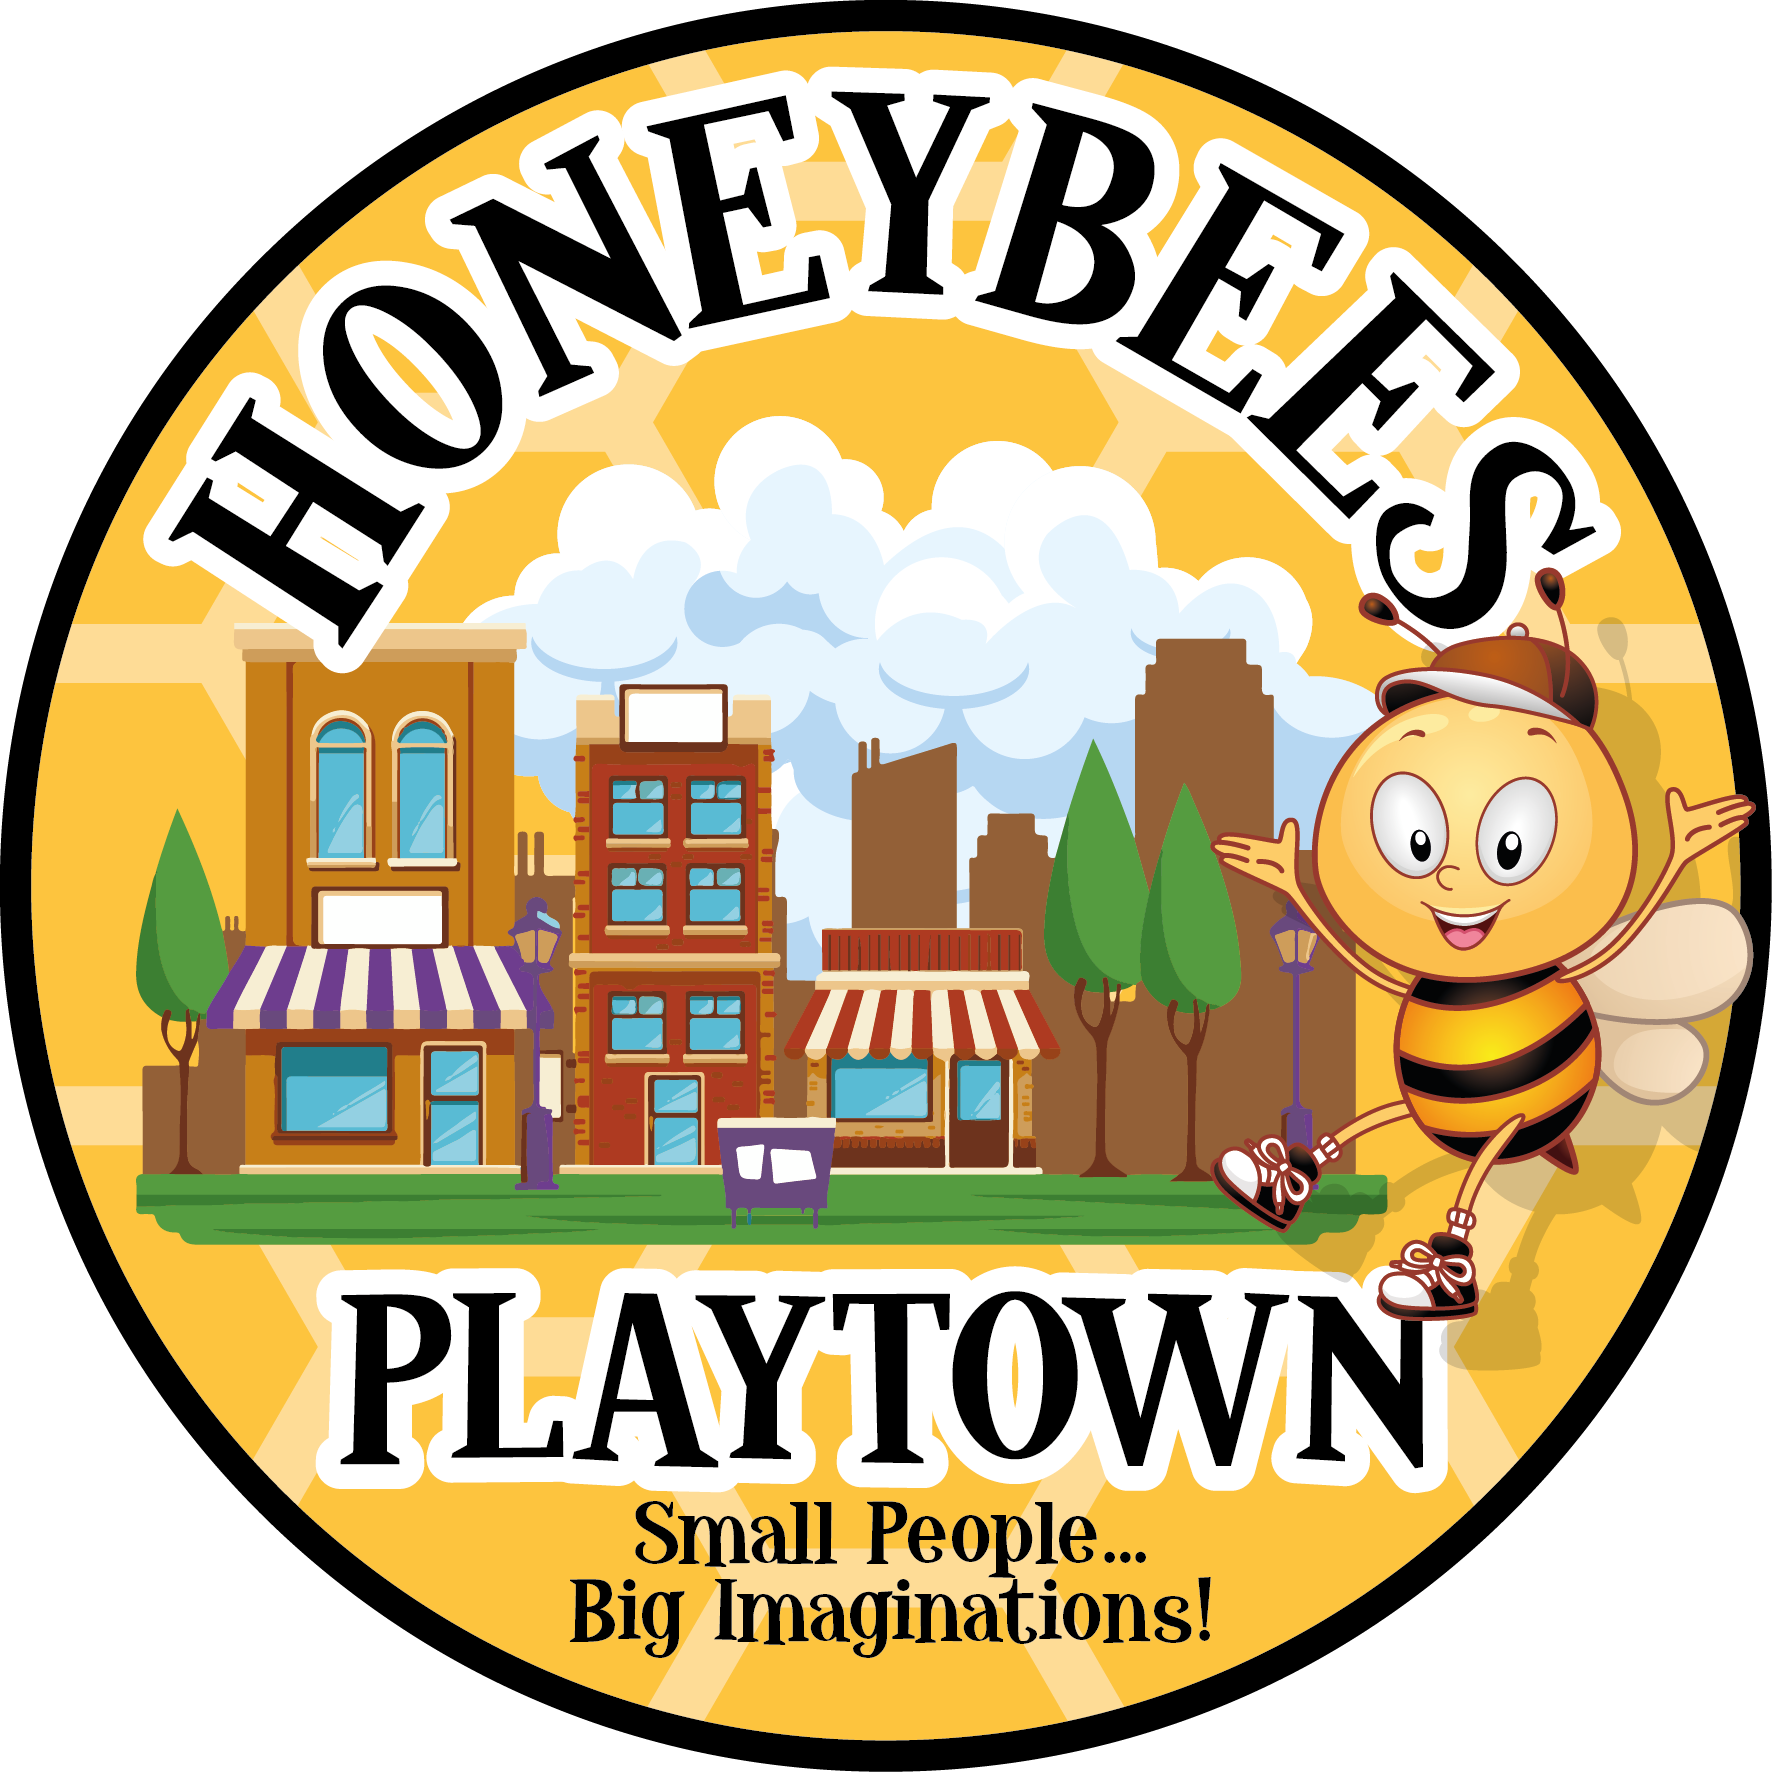 Honeybees Playtown